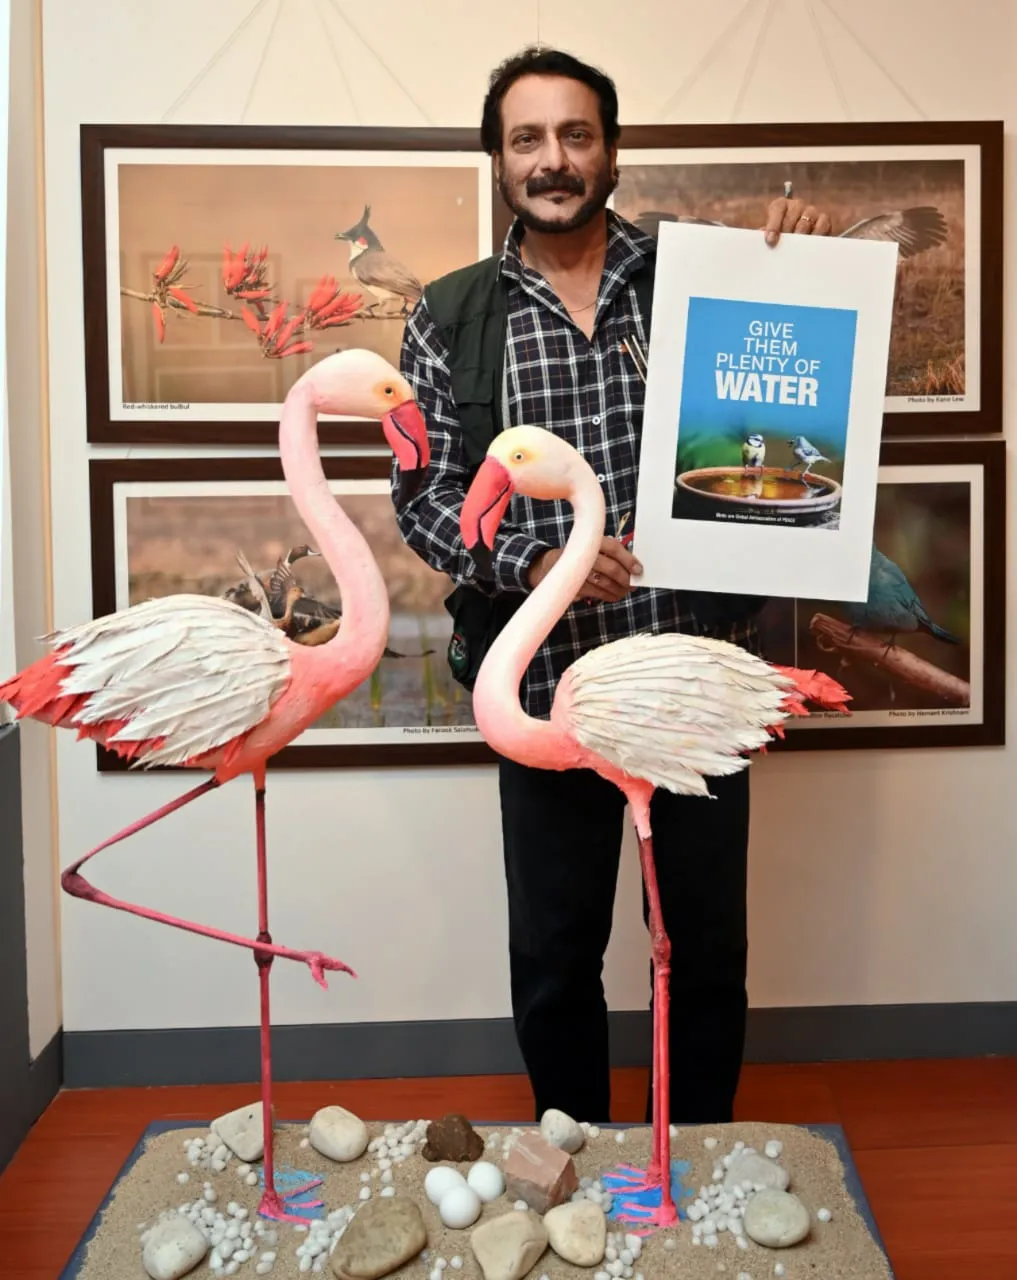 बेटे की शादी के बाद काम पर लौट एक्टर मिलिंद गुणाजी, पर्यावरण संरक्षण औऱ पक्षी बचाओ के खास प्रदर्शनी में हुए शामिल